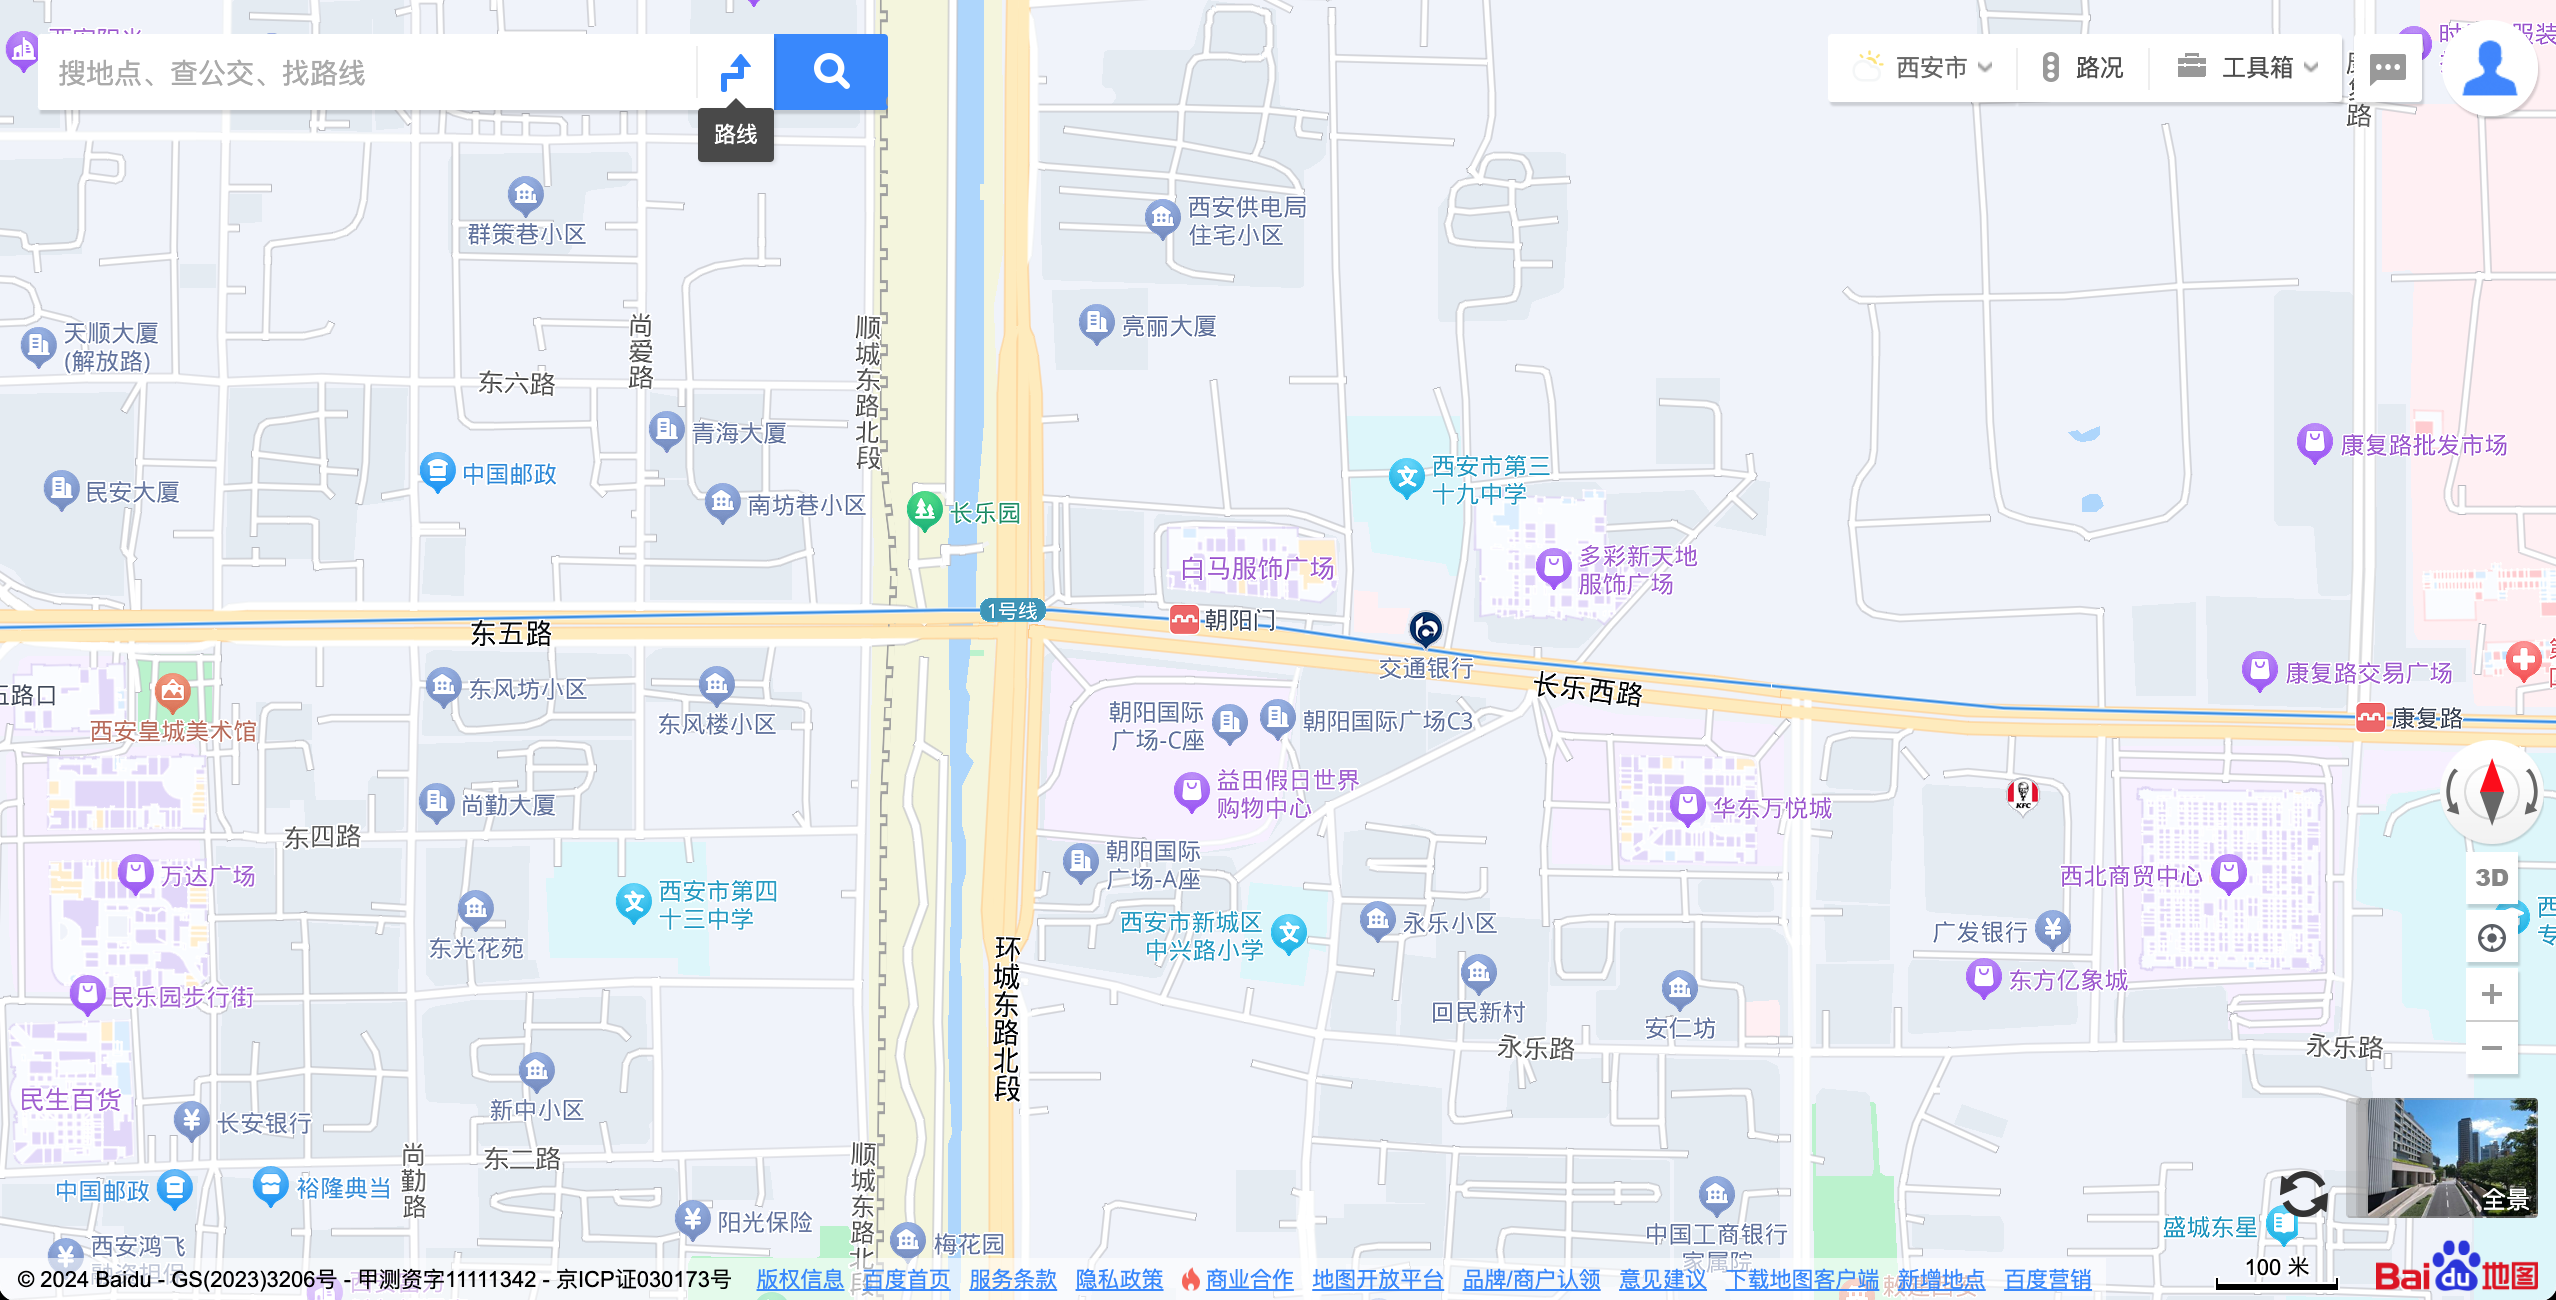 中国西安の城壁の東側の地下鉄1号線近くにある朝陽門駅周辺の地図